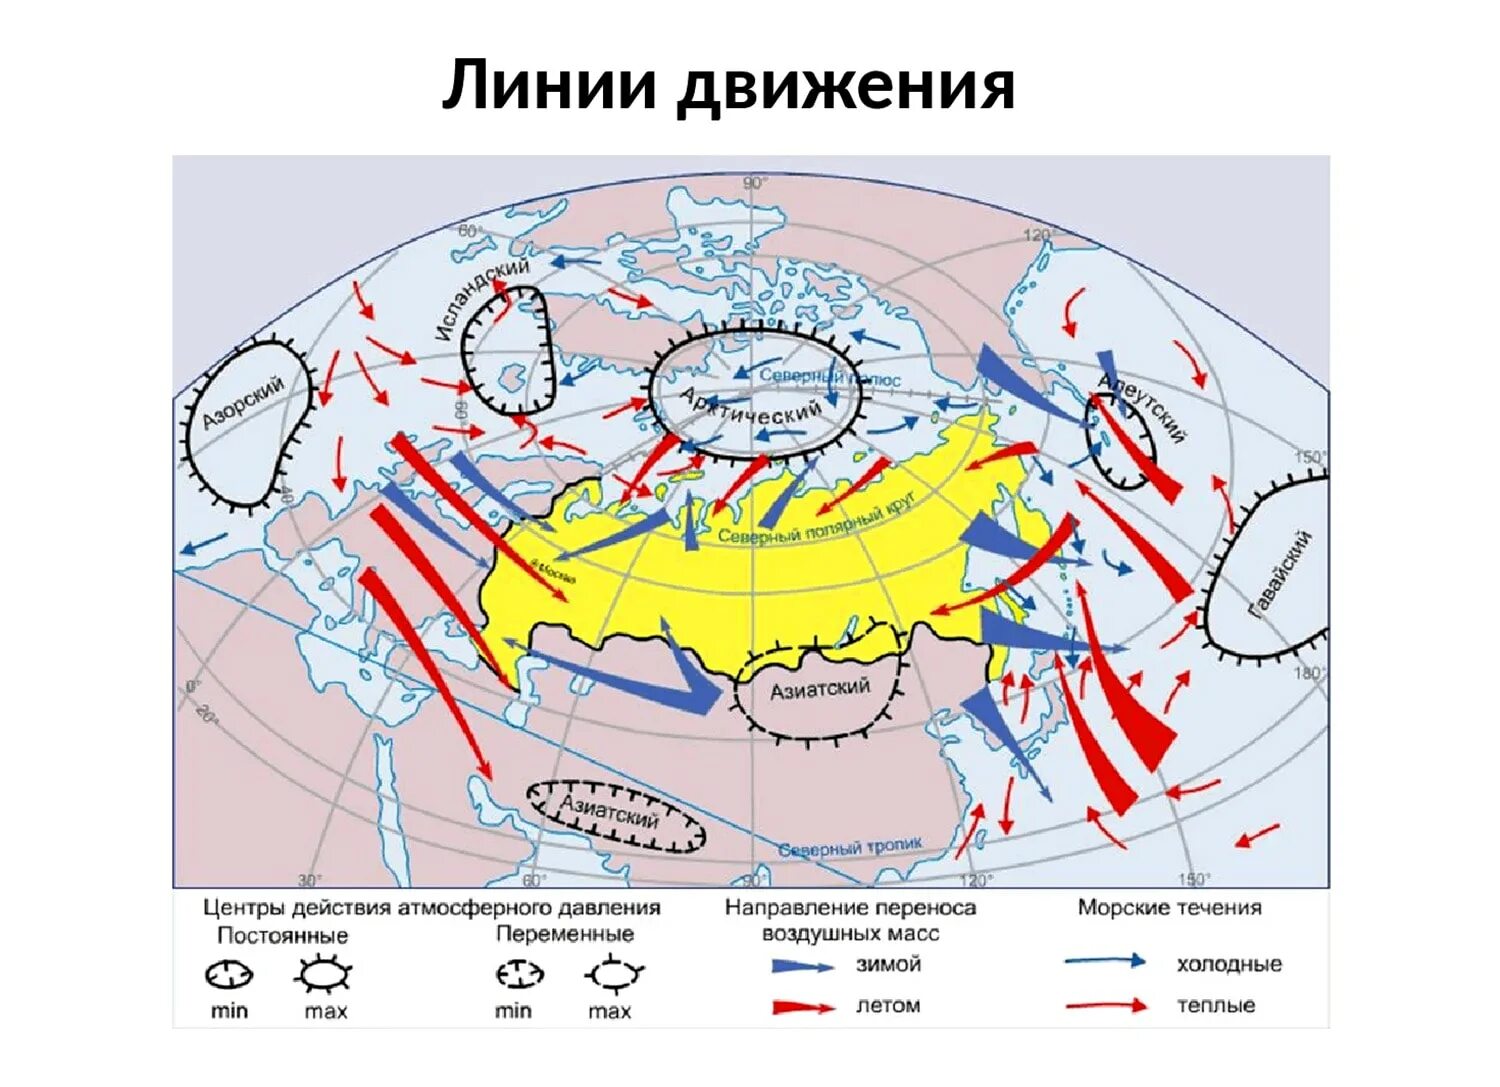 Сибирь муссон. Карта циркуляции атмосферы России. Схема распределения воздушных масс. Воздушные массы Евразии на карте. Направление движения воздушных масс.